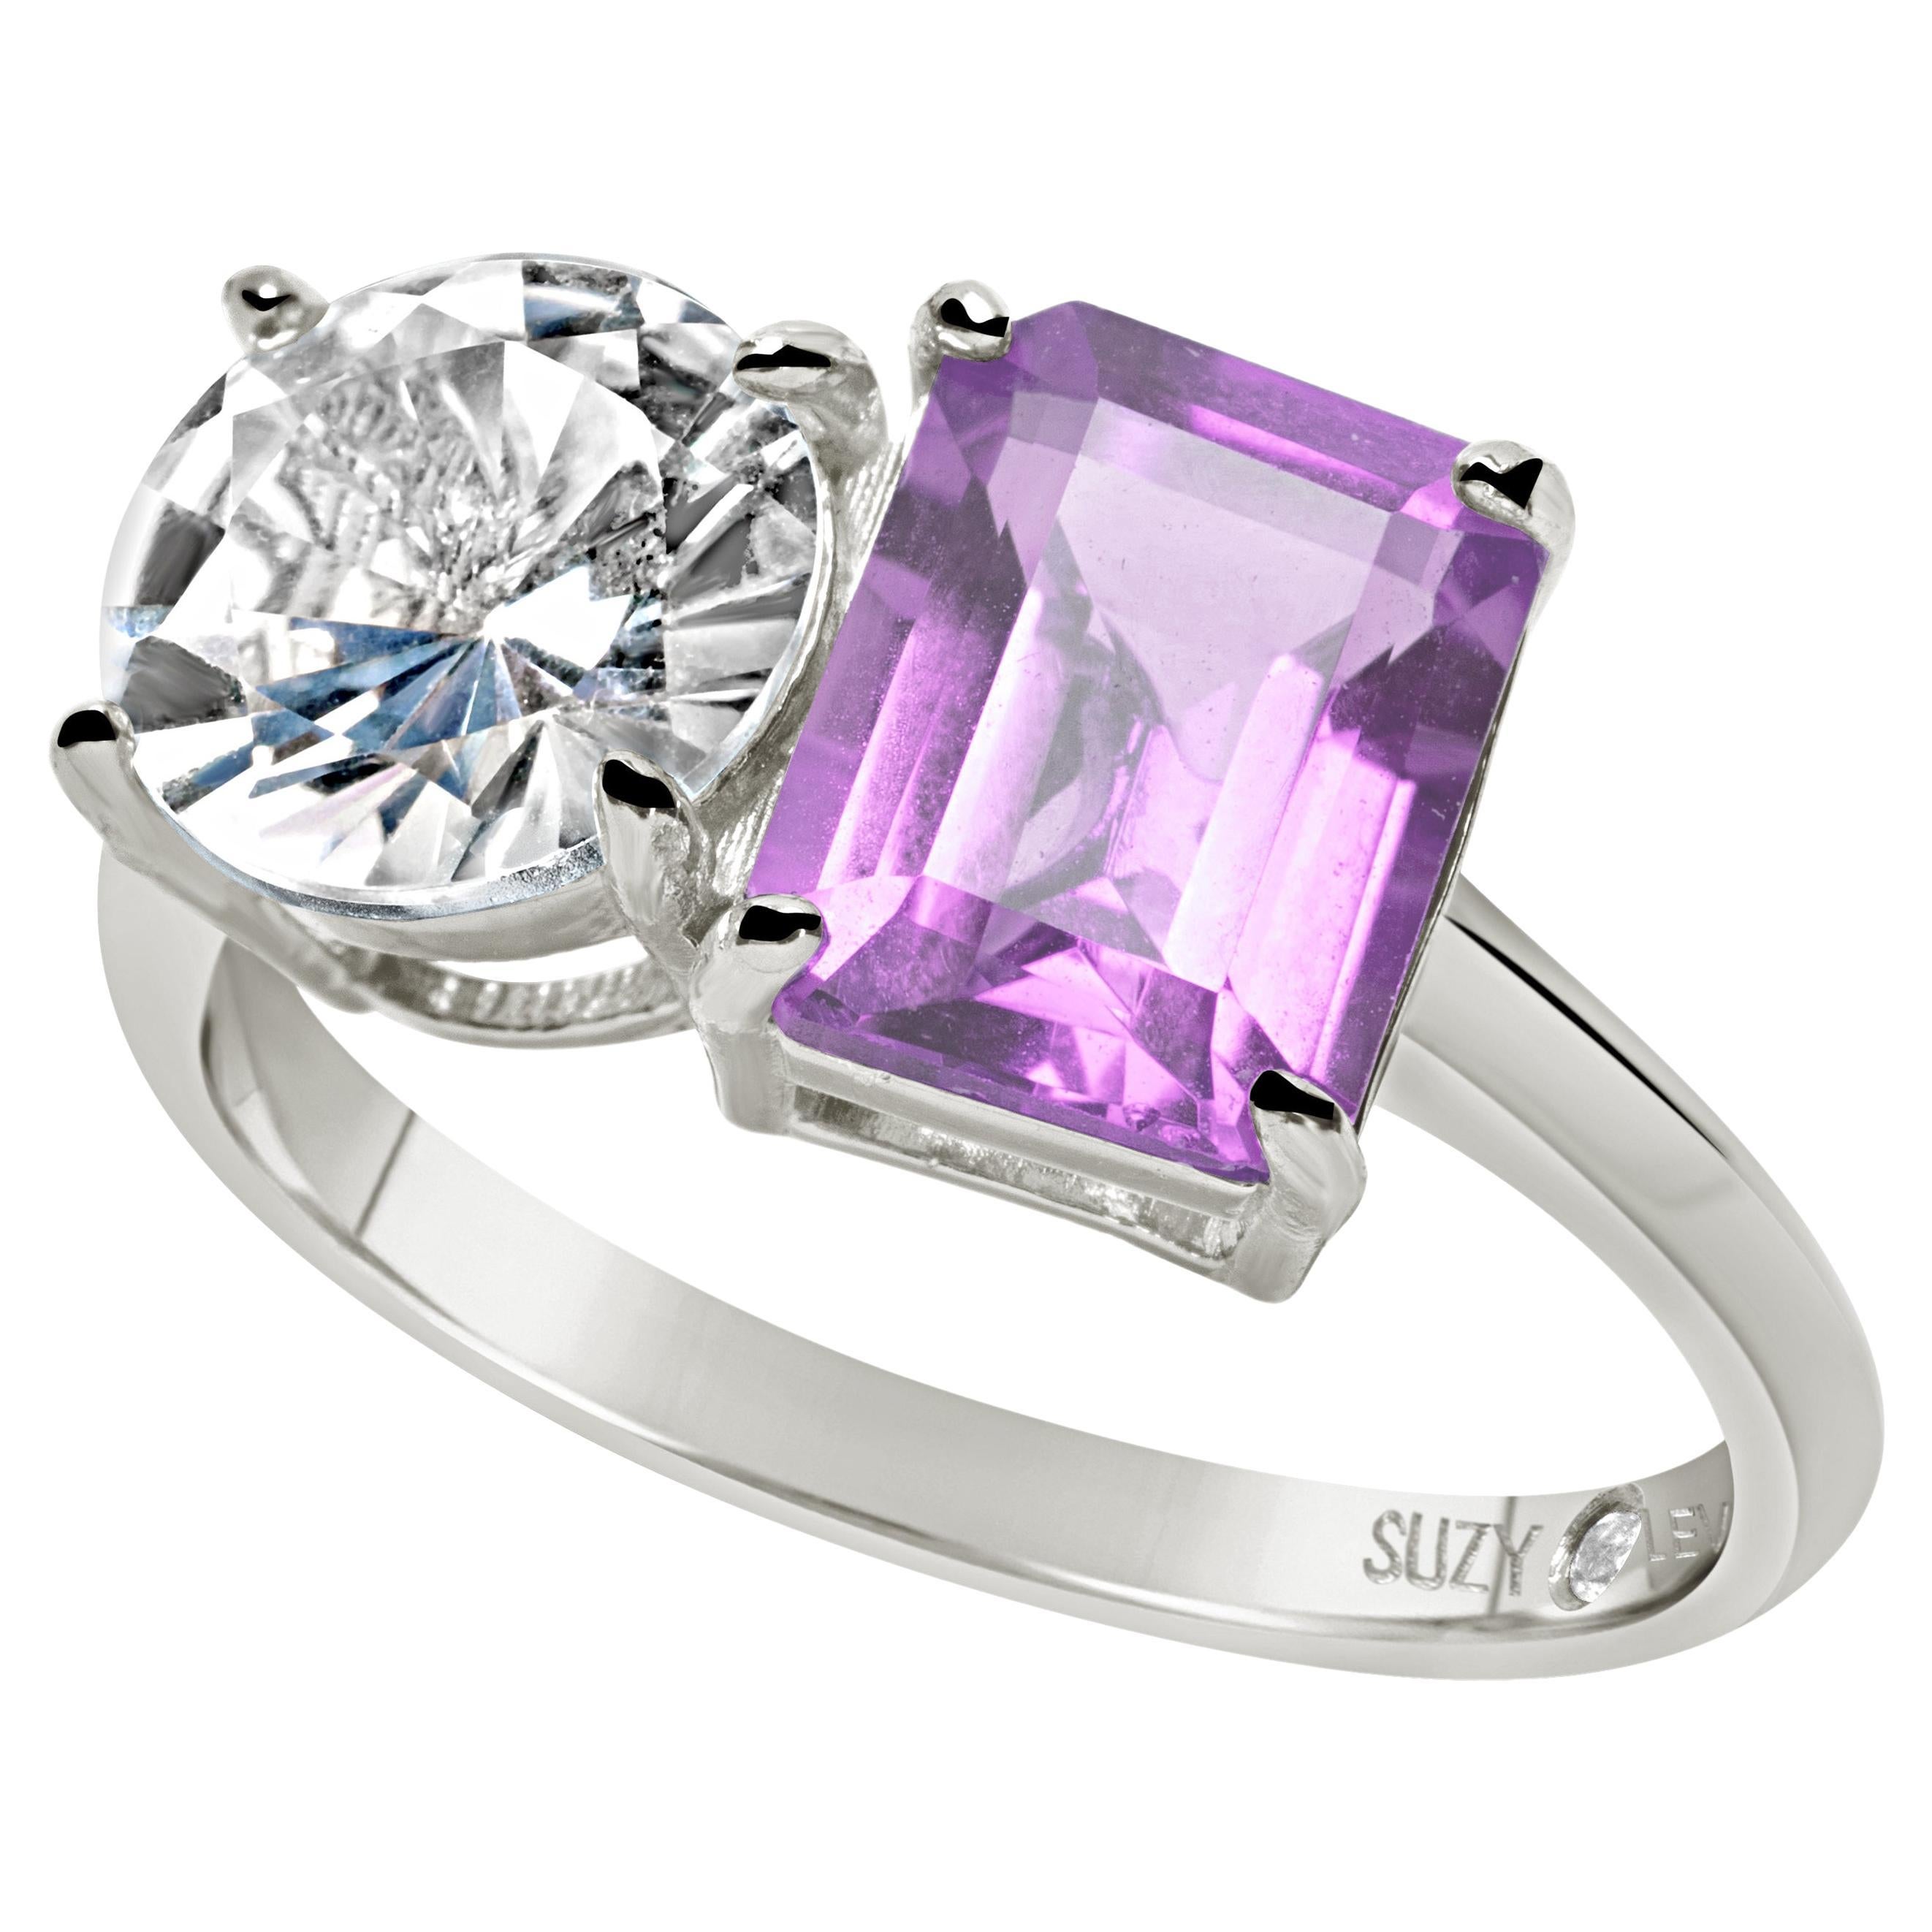 Suzy Levian Sterling Silver White Topaz & Purple Amethyst Two Stone Ring (bague à deux pierres en argent blanc et améthyste violette)